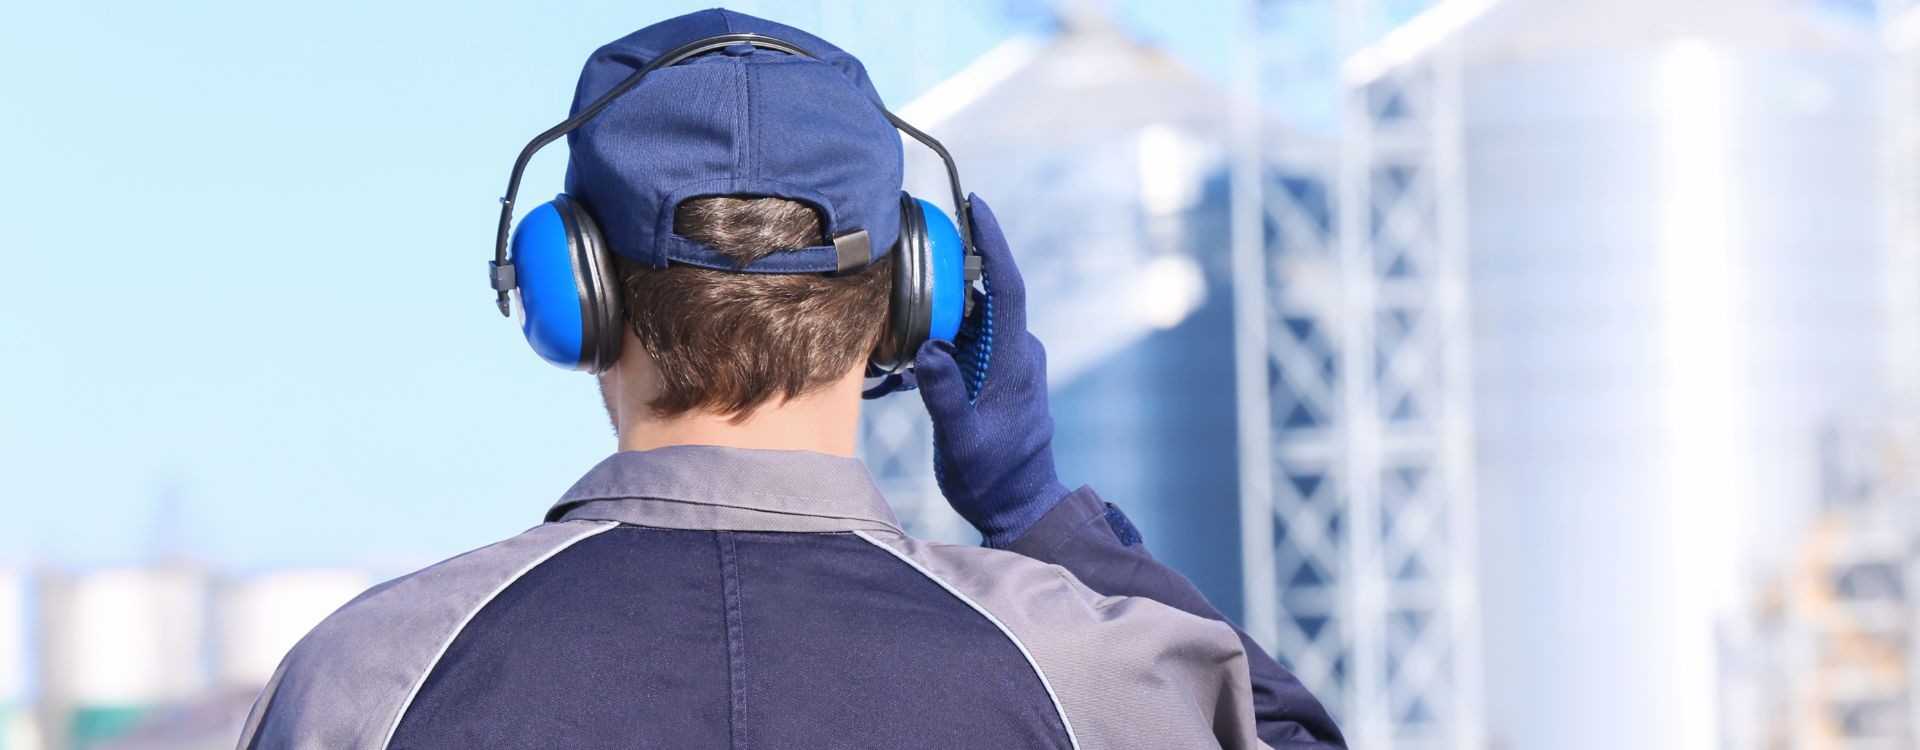 Protección auditiva para trabajos ruidosos